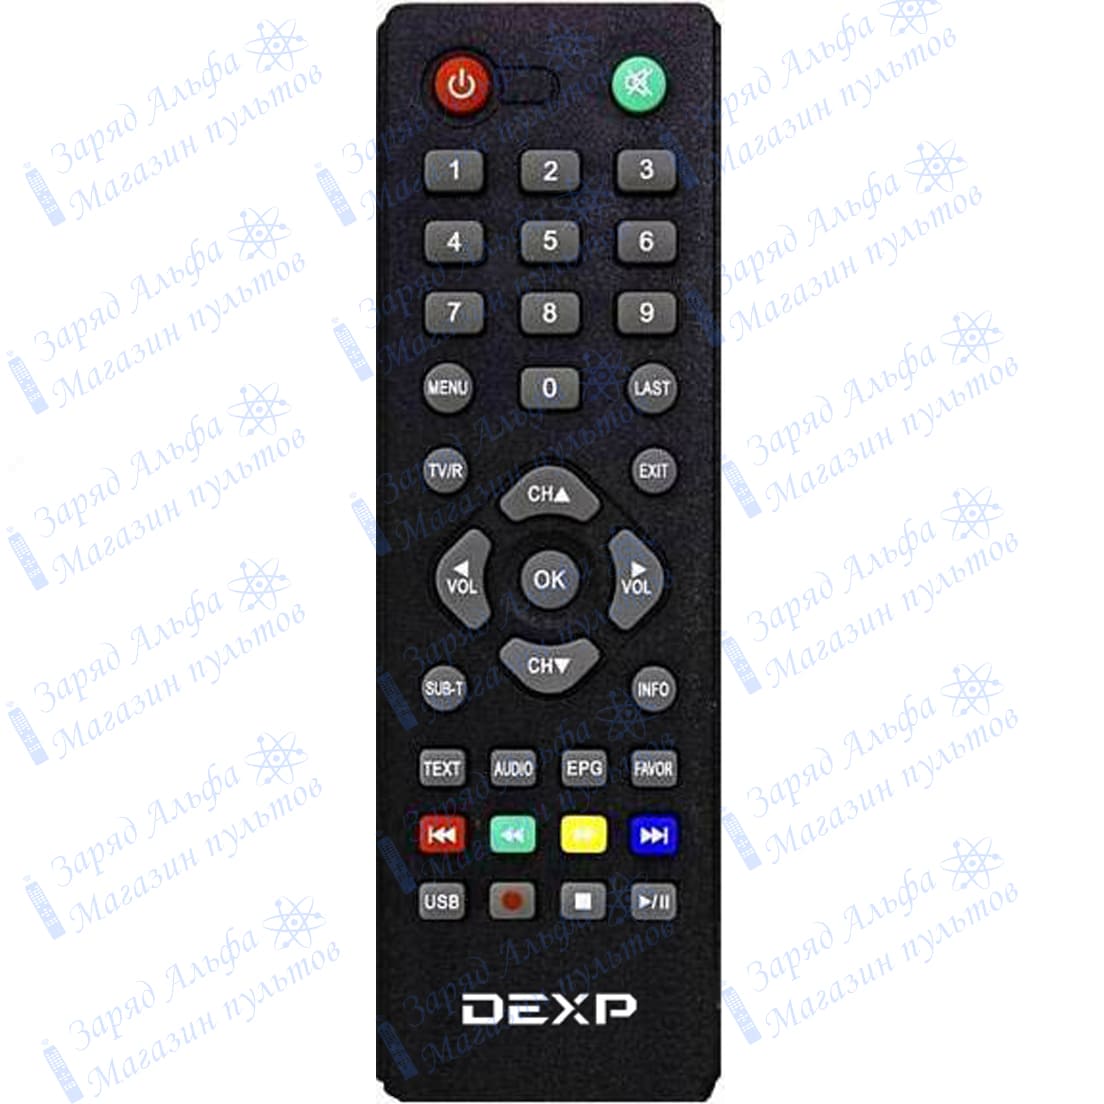 Приобрести пульт DEXP HD 2551P для цифровой приставки DVB-T2